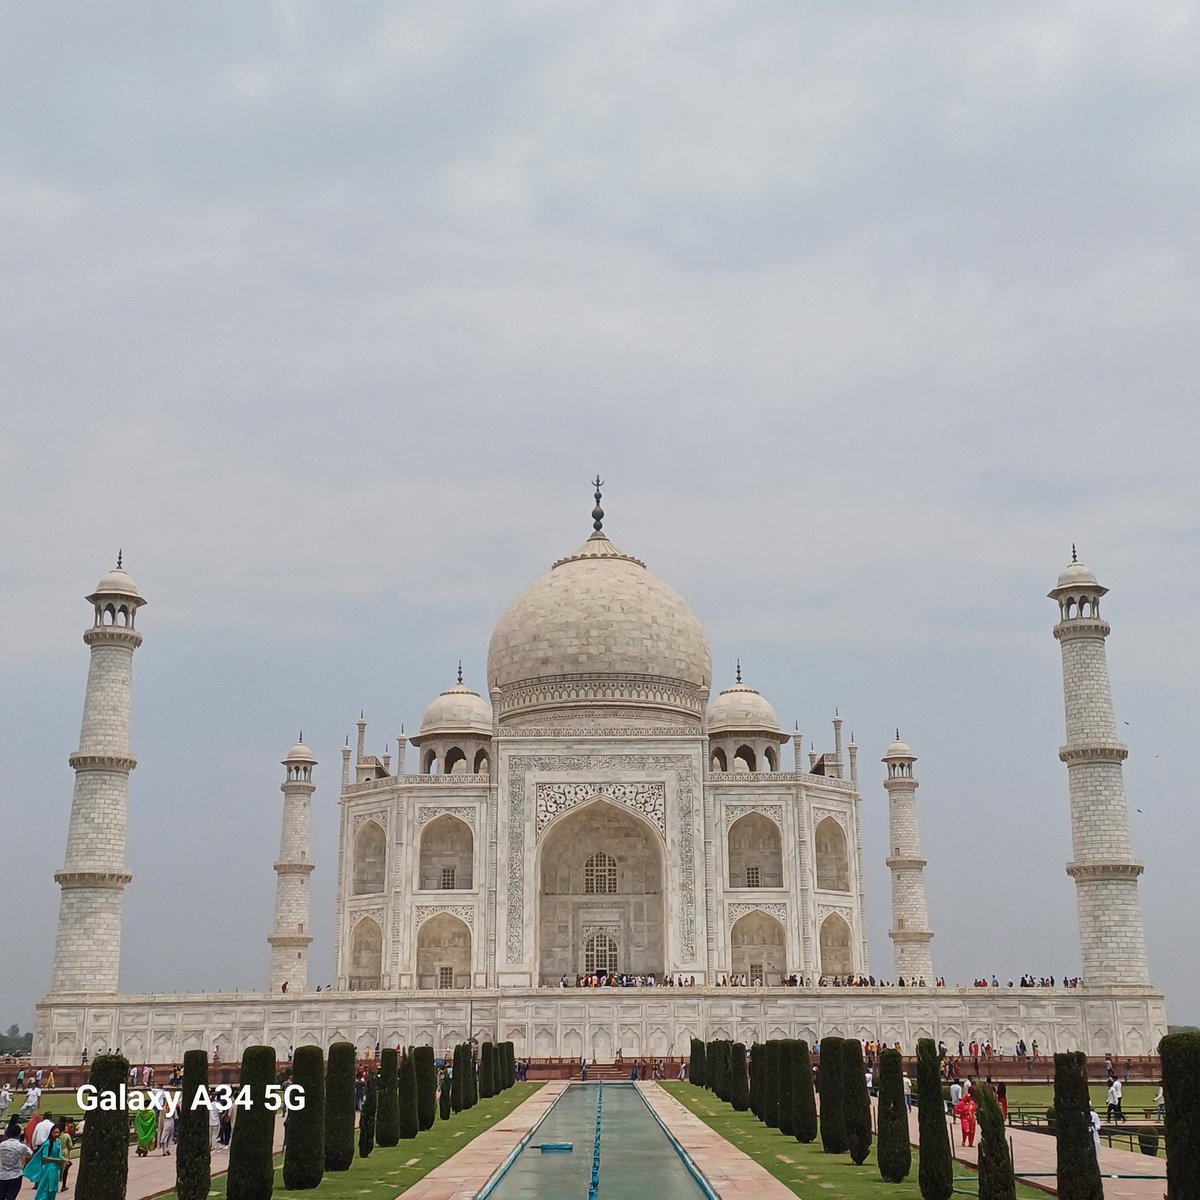 You beatuy The Taj Mahal
#TajMahal